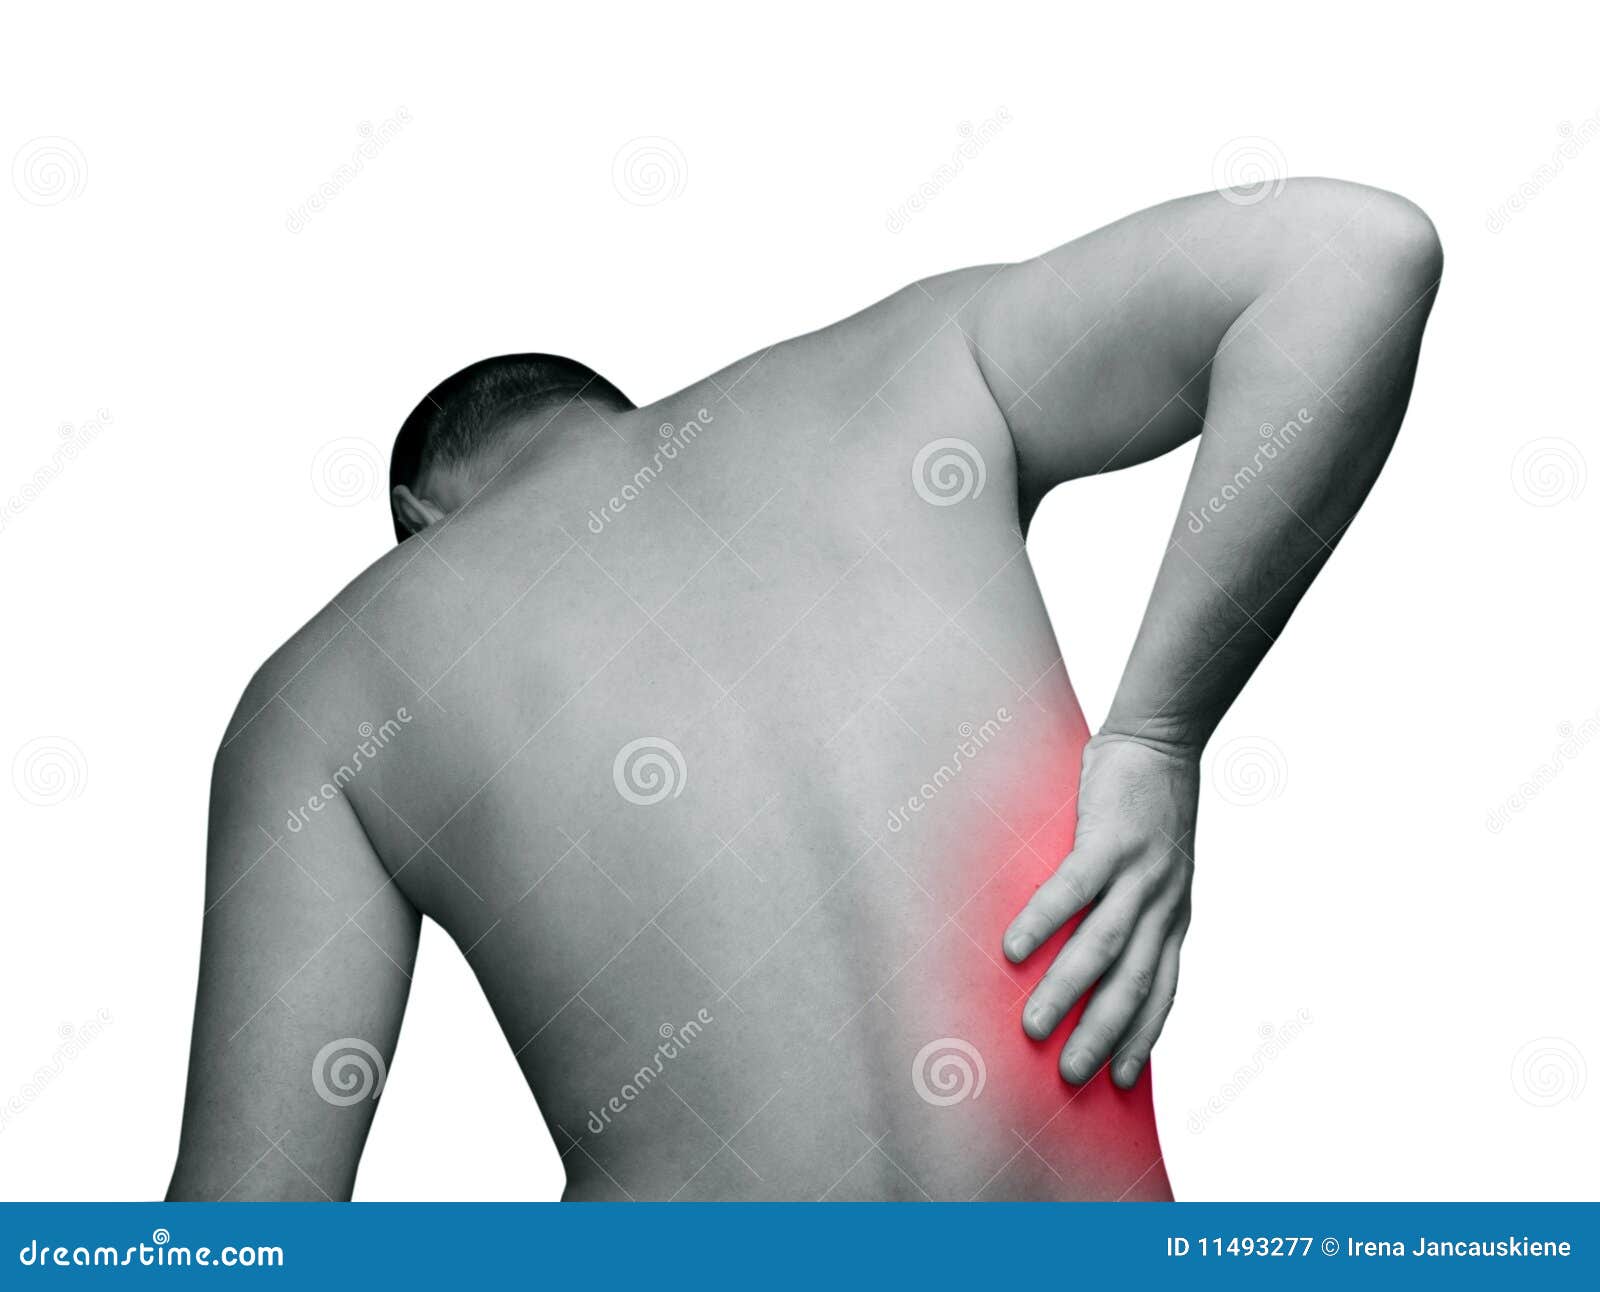 Левый бок выше поясницы. Боль в спине. Боль в спине справа. Болит спина справа под ребрами. Боль в спине справа под ребрами.